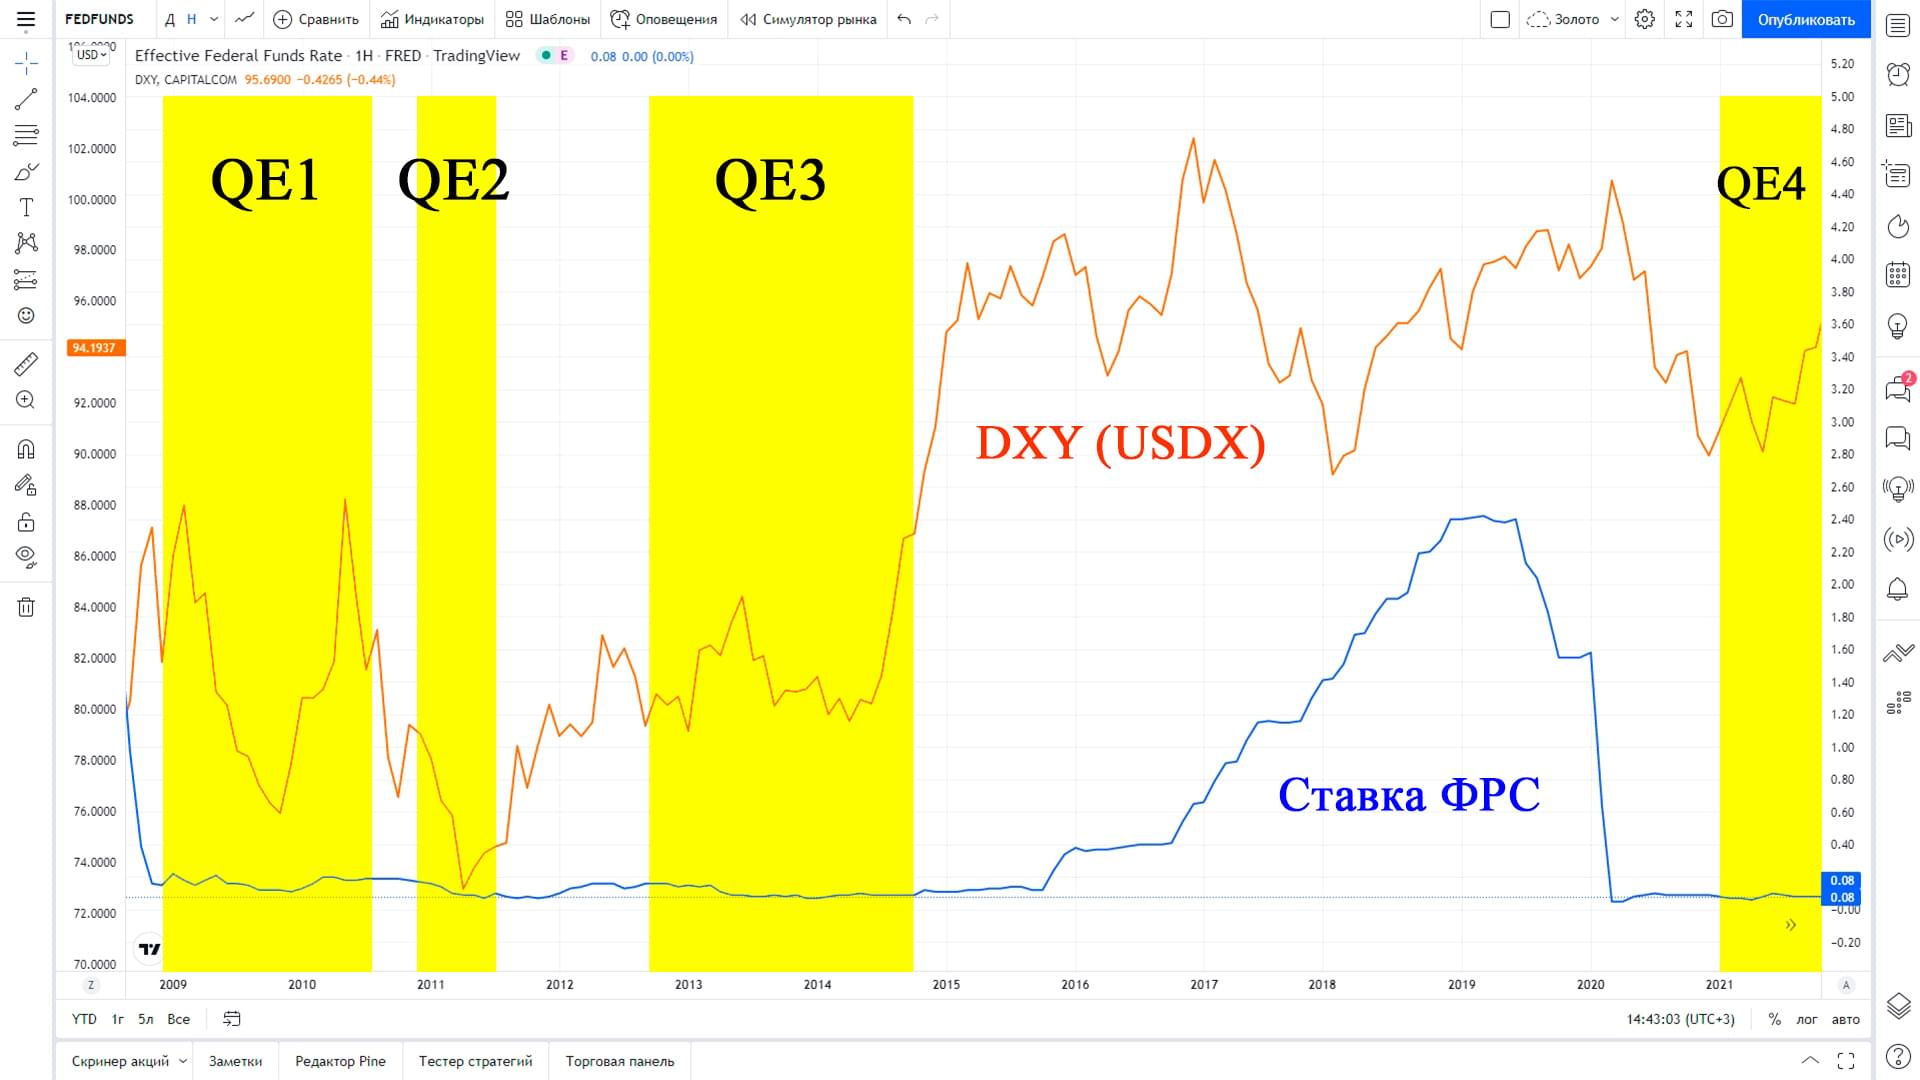 Отражение циклов QE1-QE4 на индексе доллара DXY.